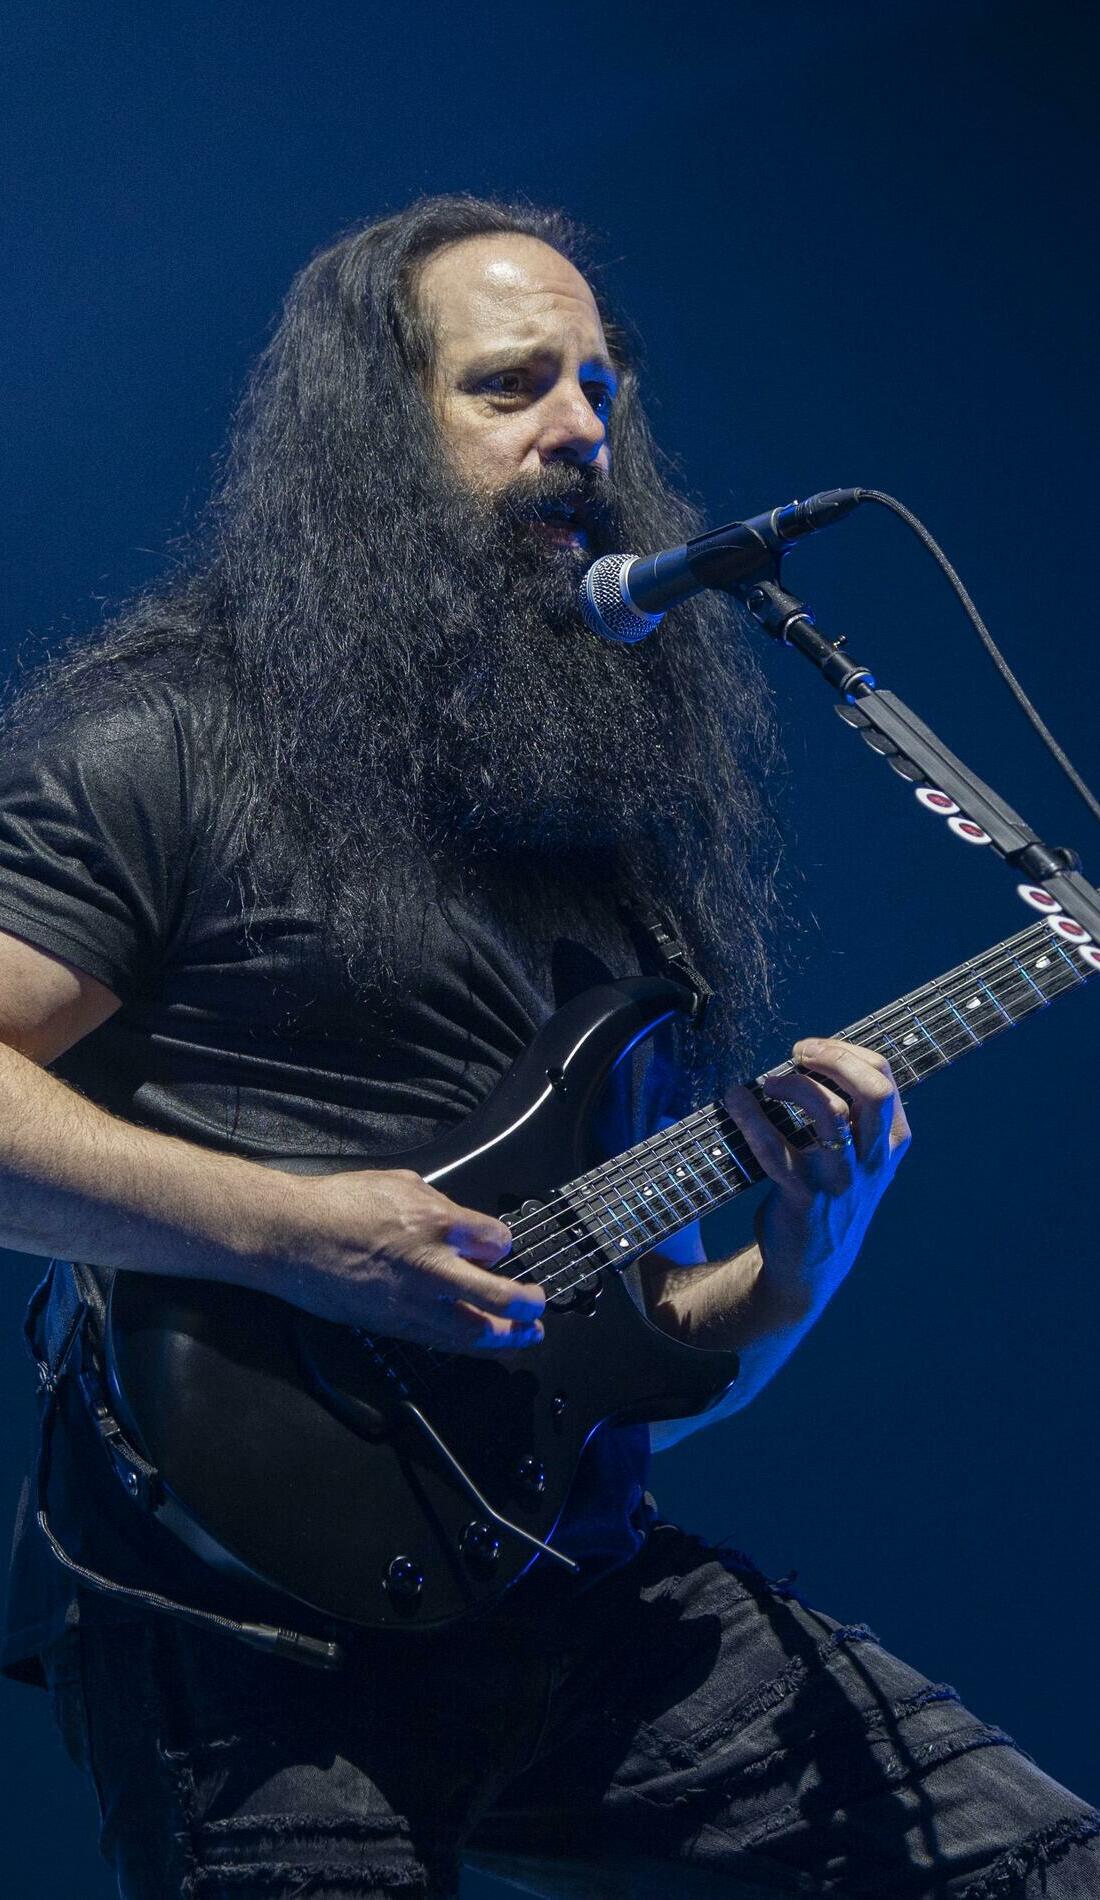 A John Petrucci live event